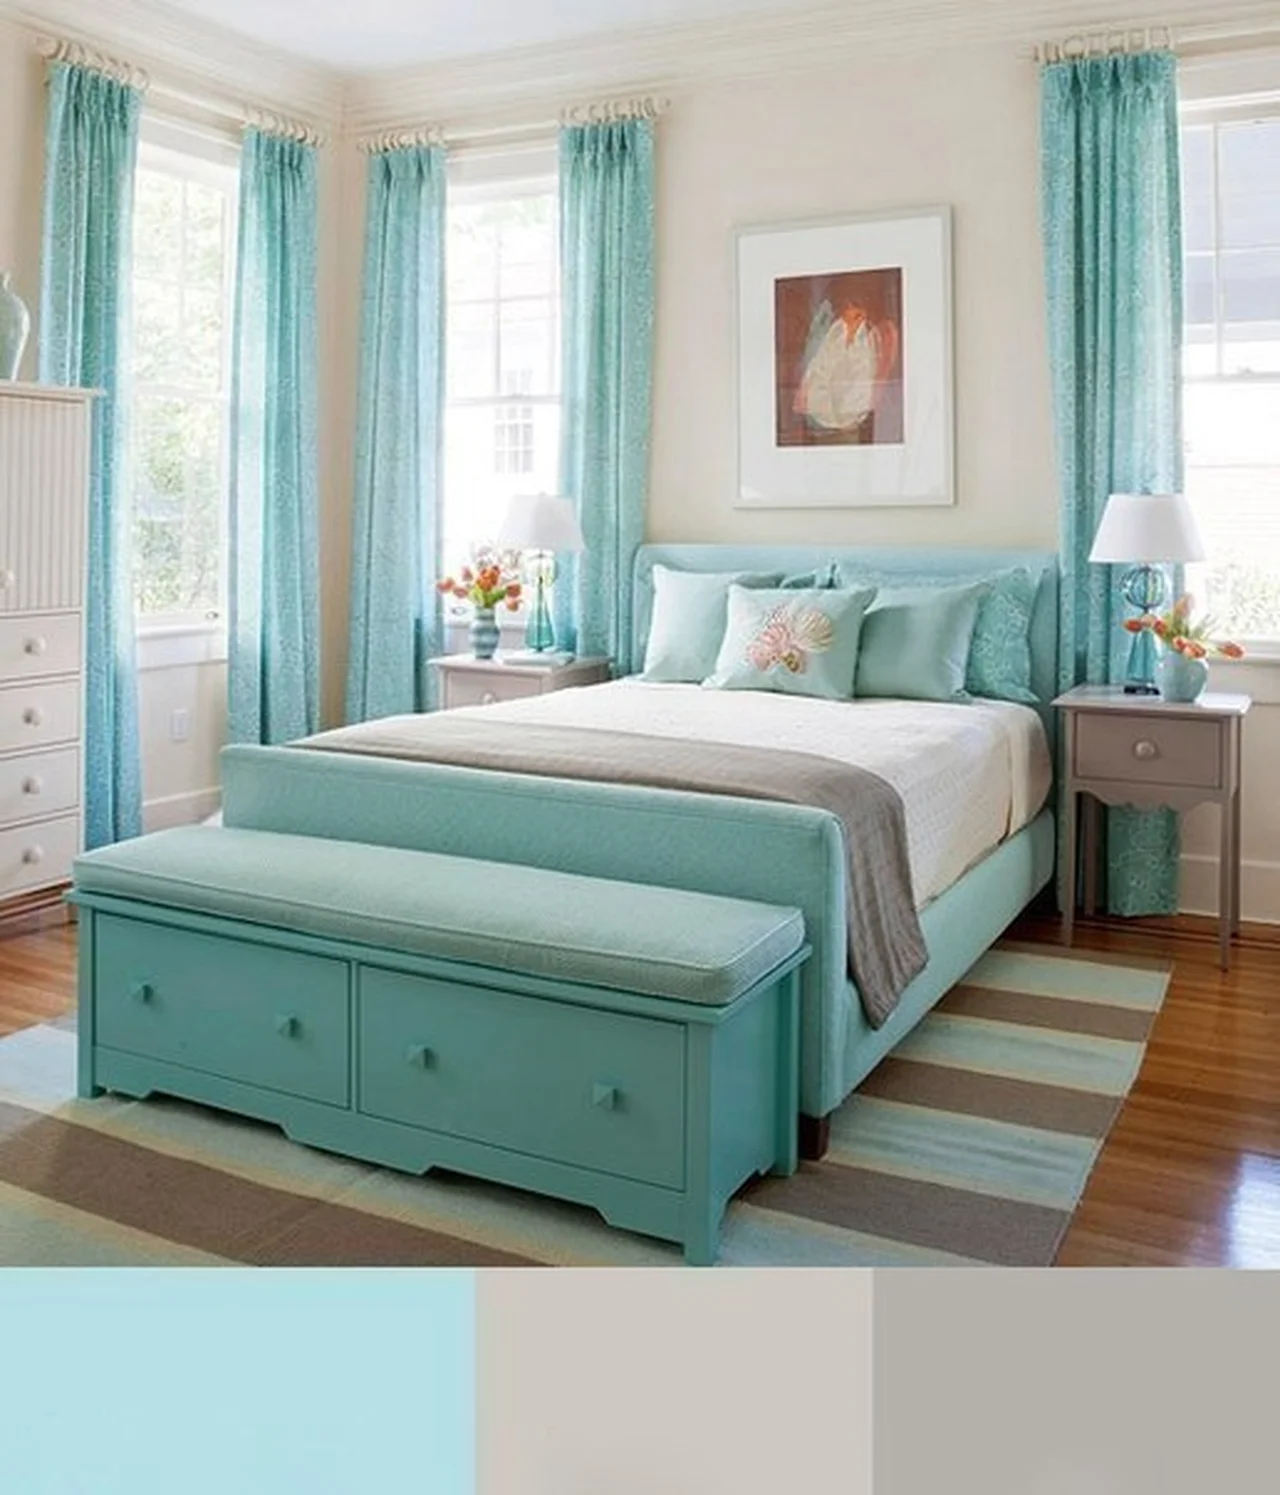 Sypialnia w pastelowych odcieniach - jakie kolory dobrać